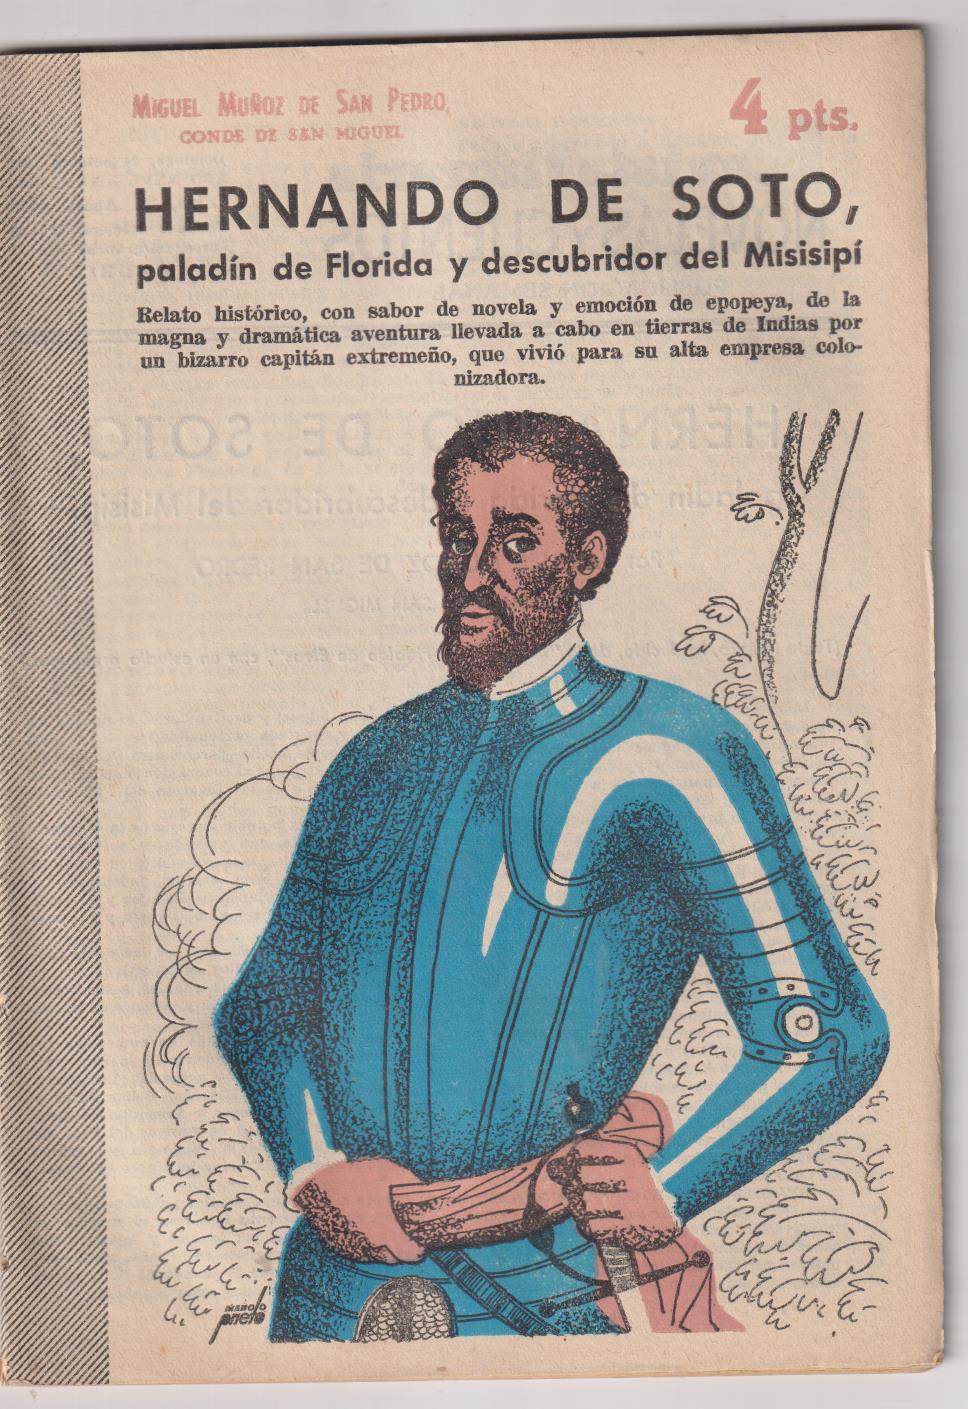 Revista Literaria Novelas y Cuentos nº 1254. Hernando de Soto. M. Muñoz de San pedro